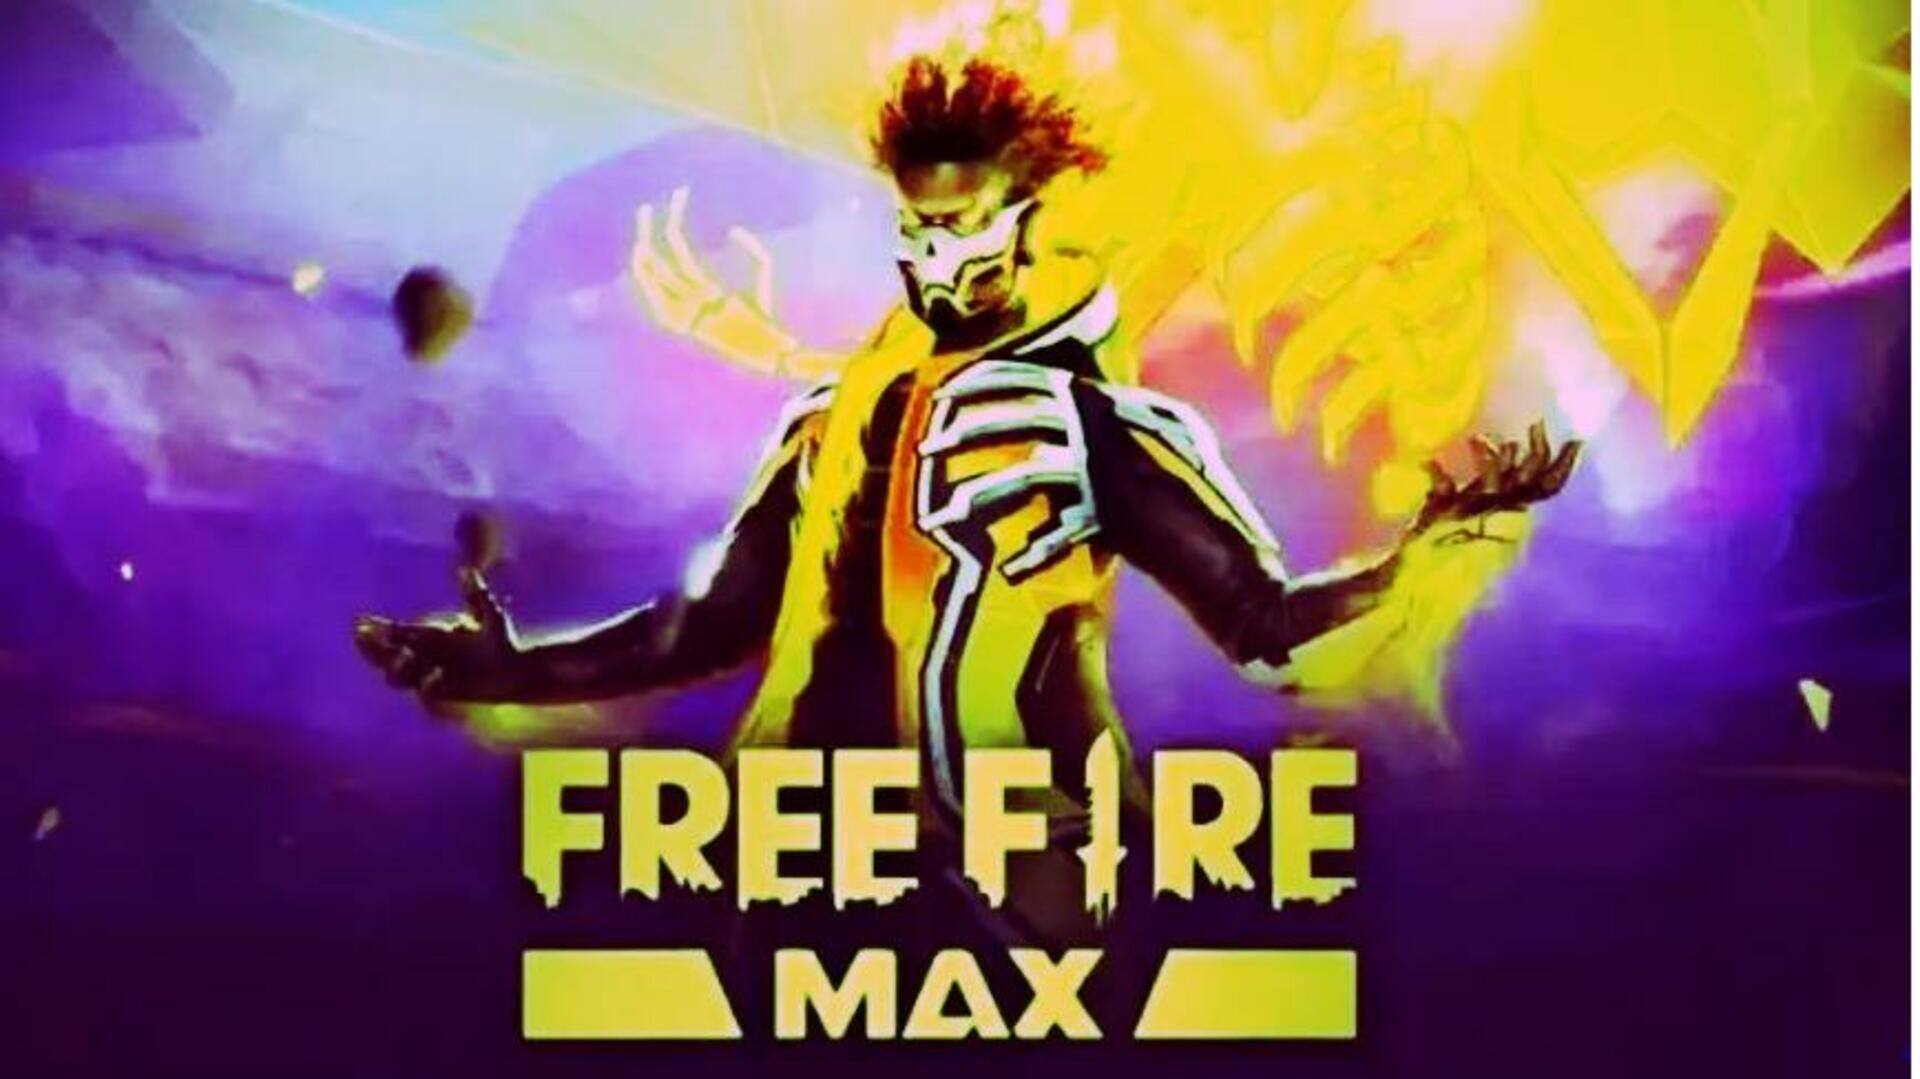 జులై 9న వచ్చే Free Fire MAX కోడ్స్ రీడీమ్ విధానం